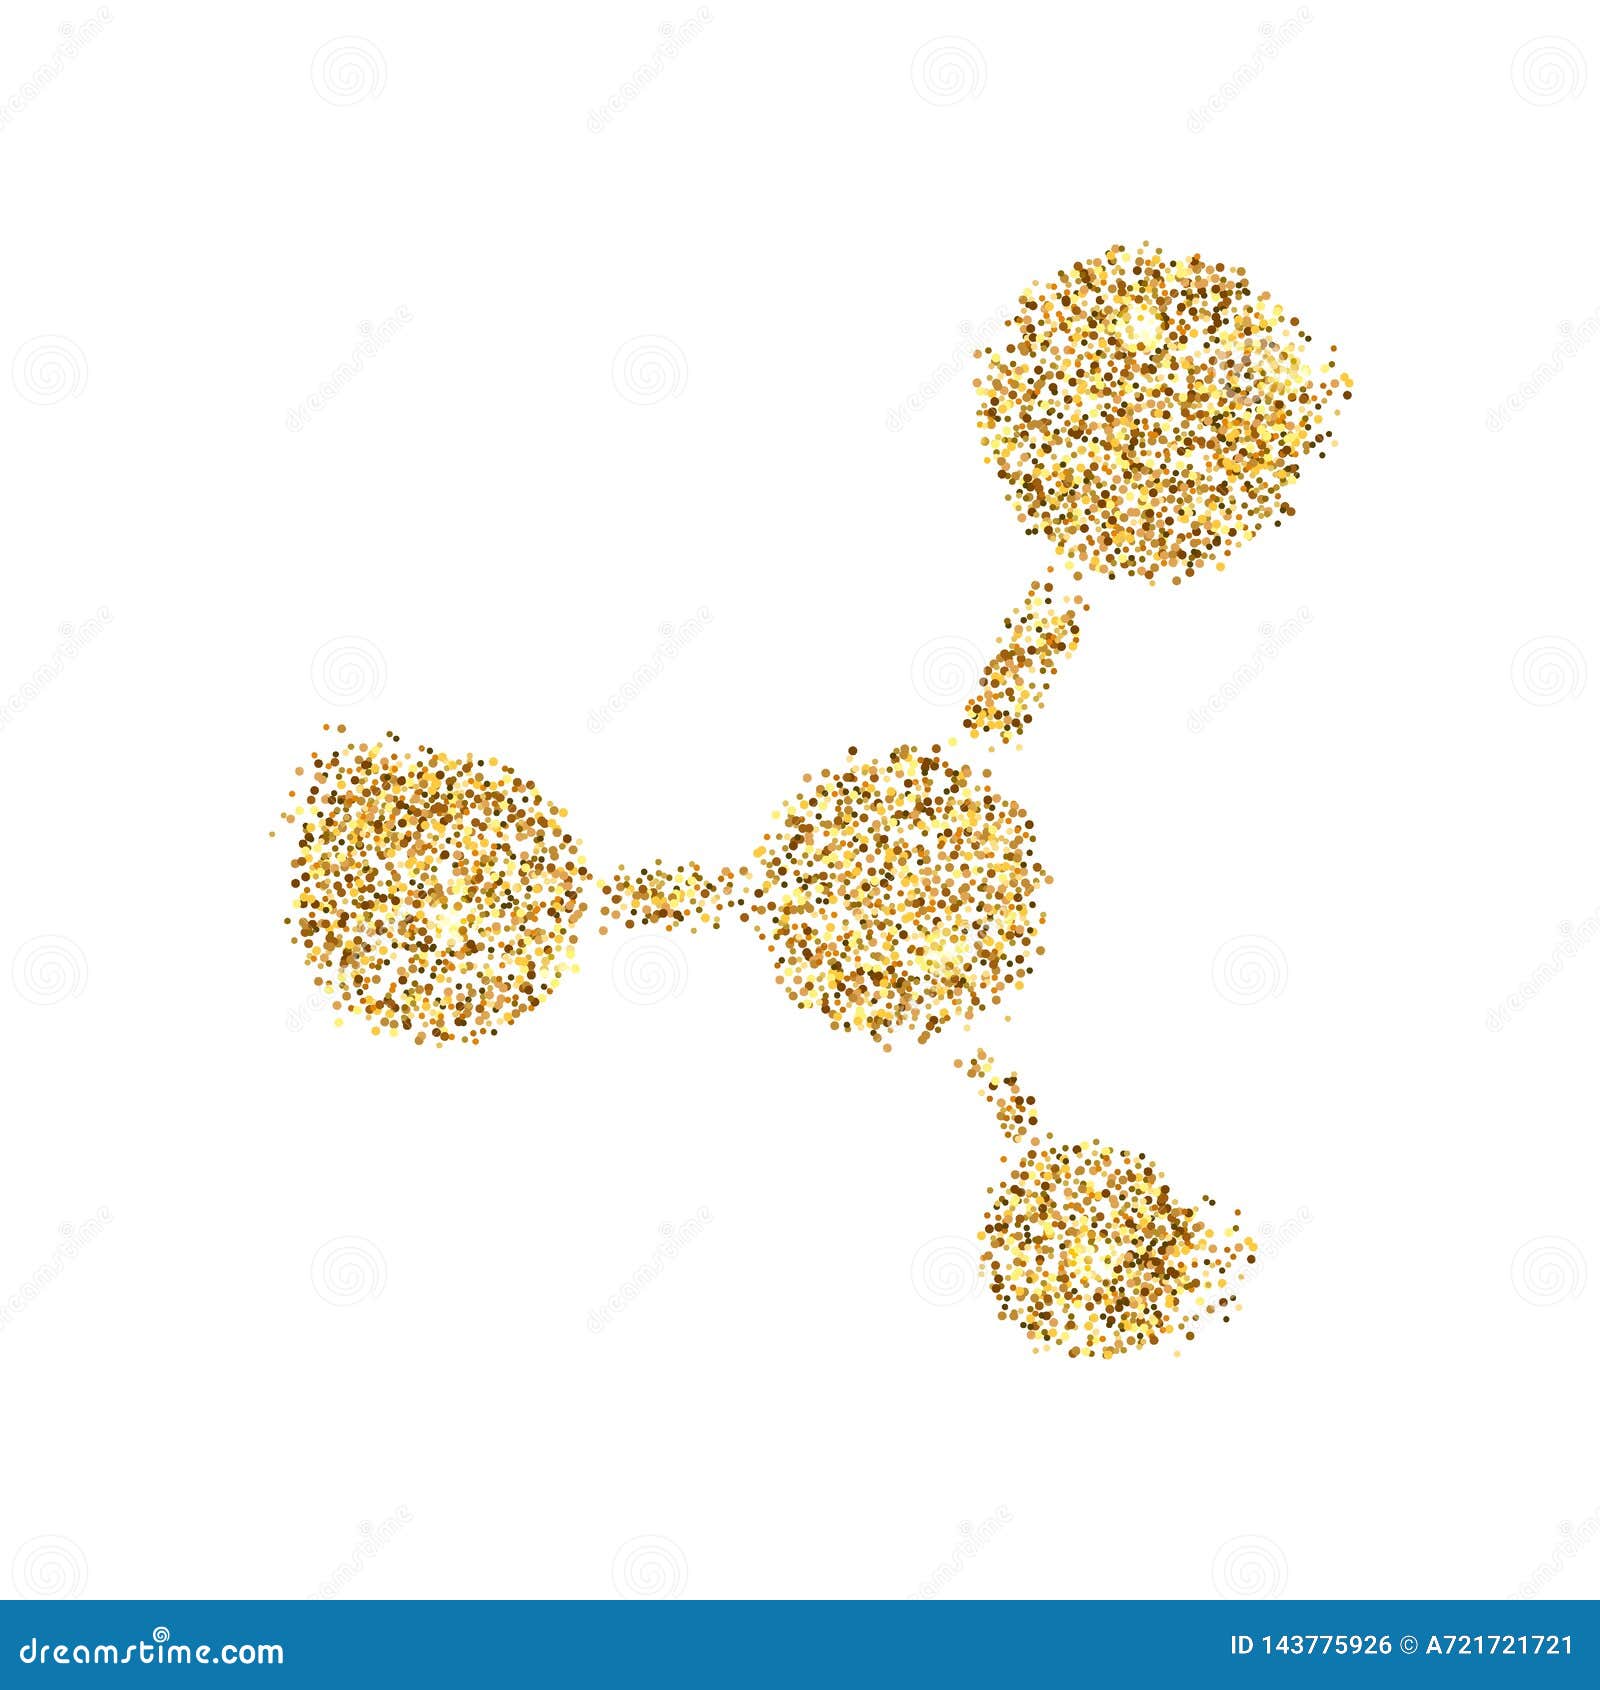 gold glitter icon of moleculas  on background. art creative concept  for web, glow light confetti, bright